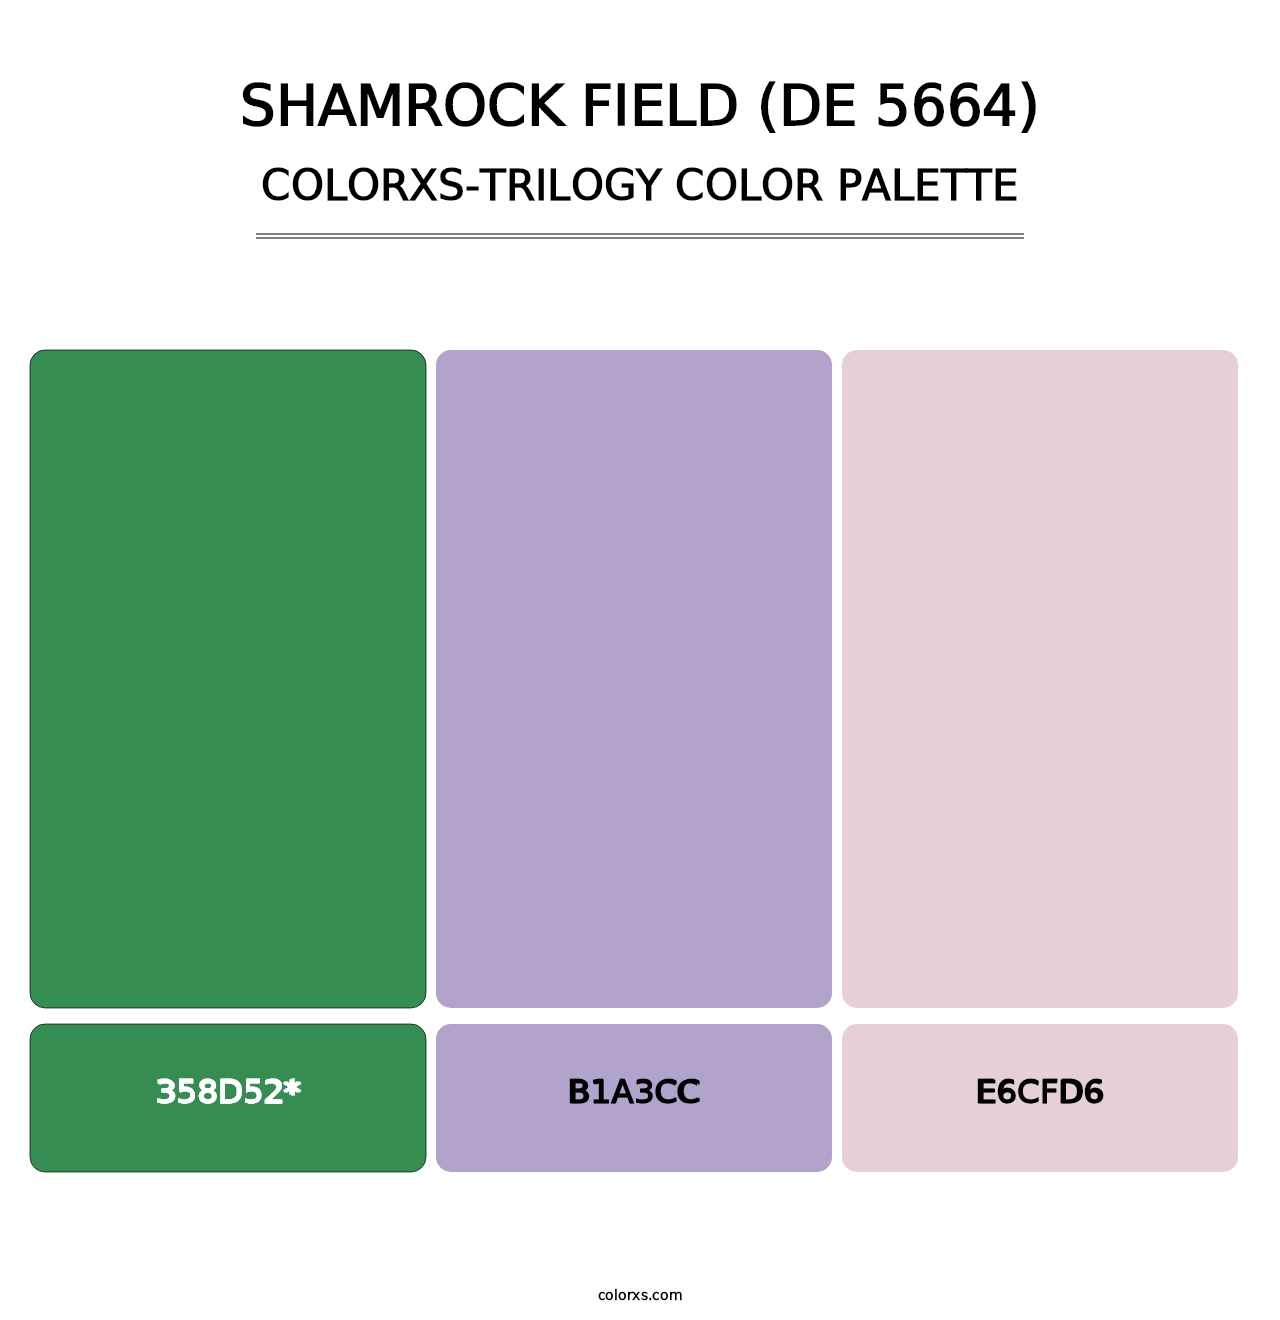 Shamrock Field (DE 5664) - Colorxs Trilogy Palette